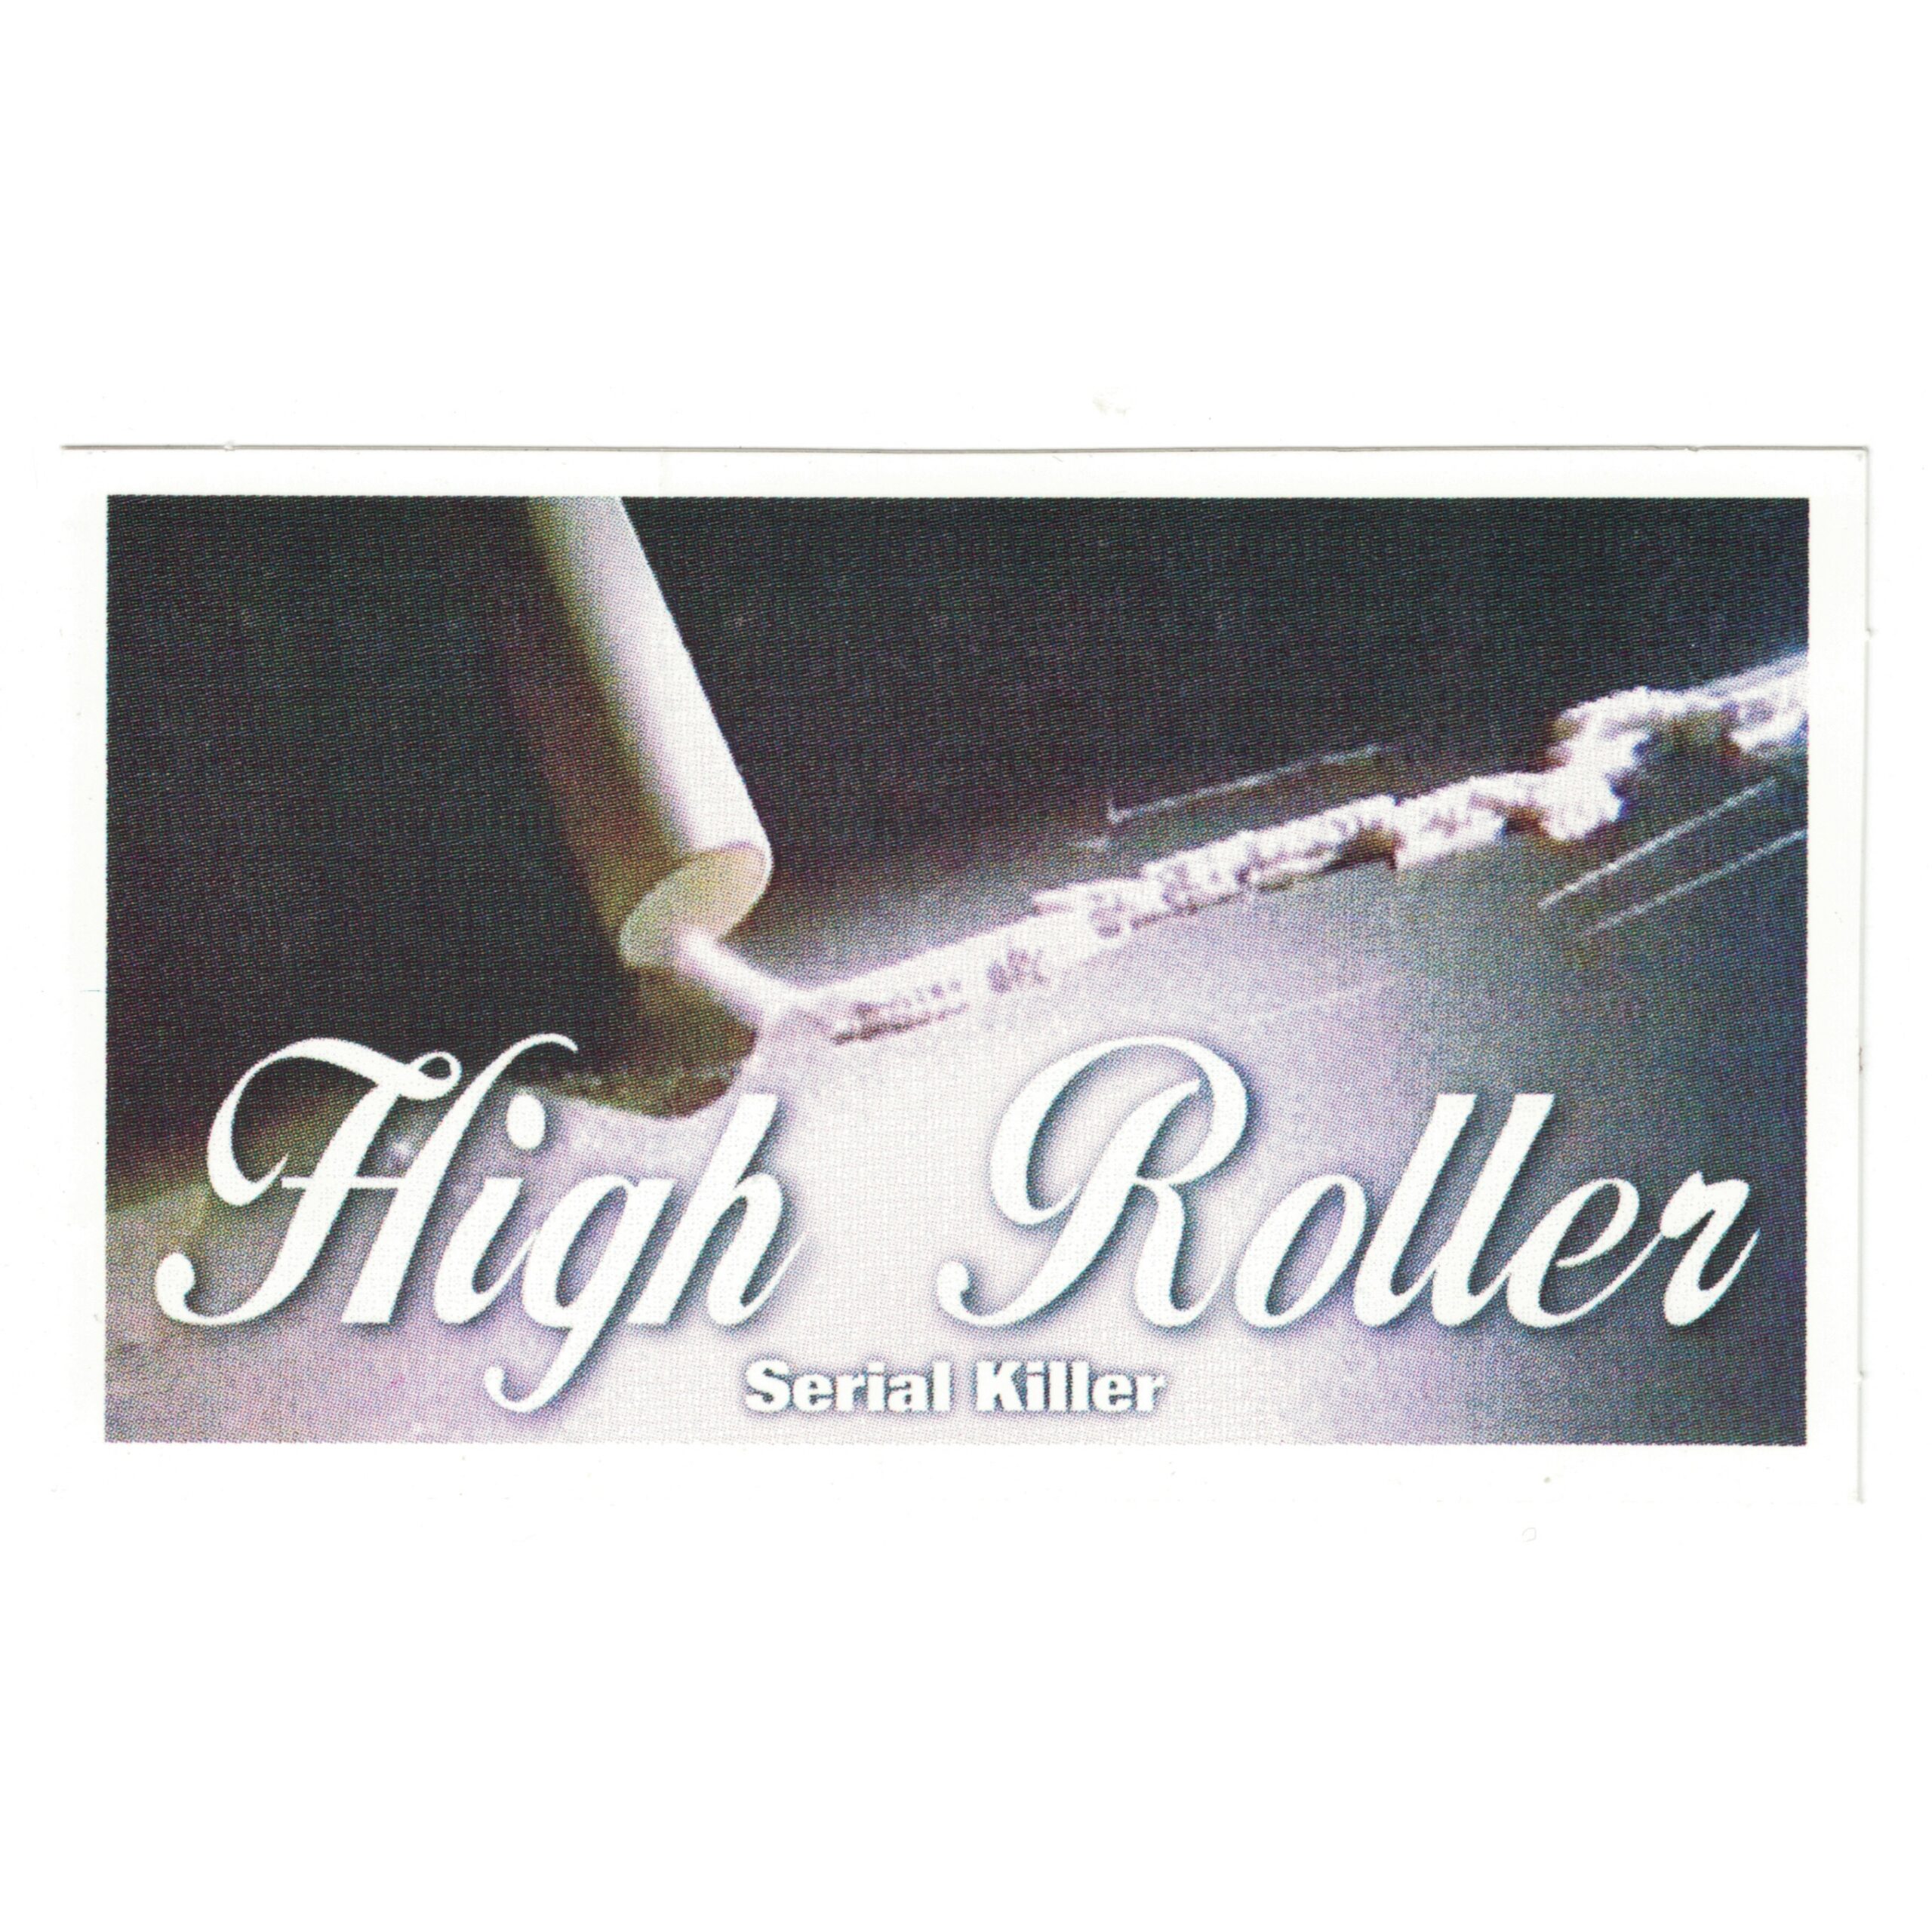 Serial Killer High Roller